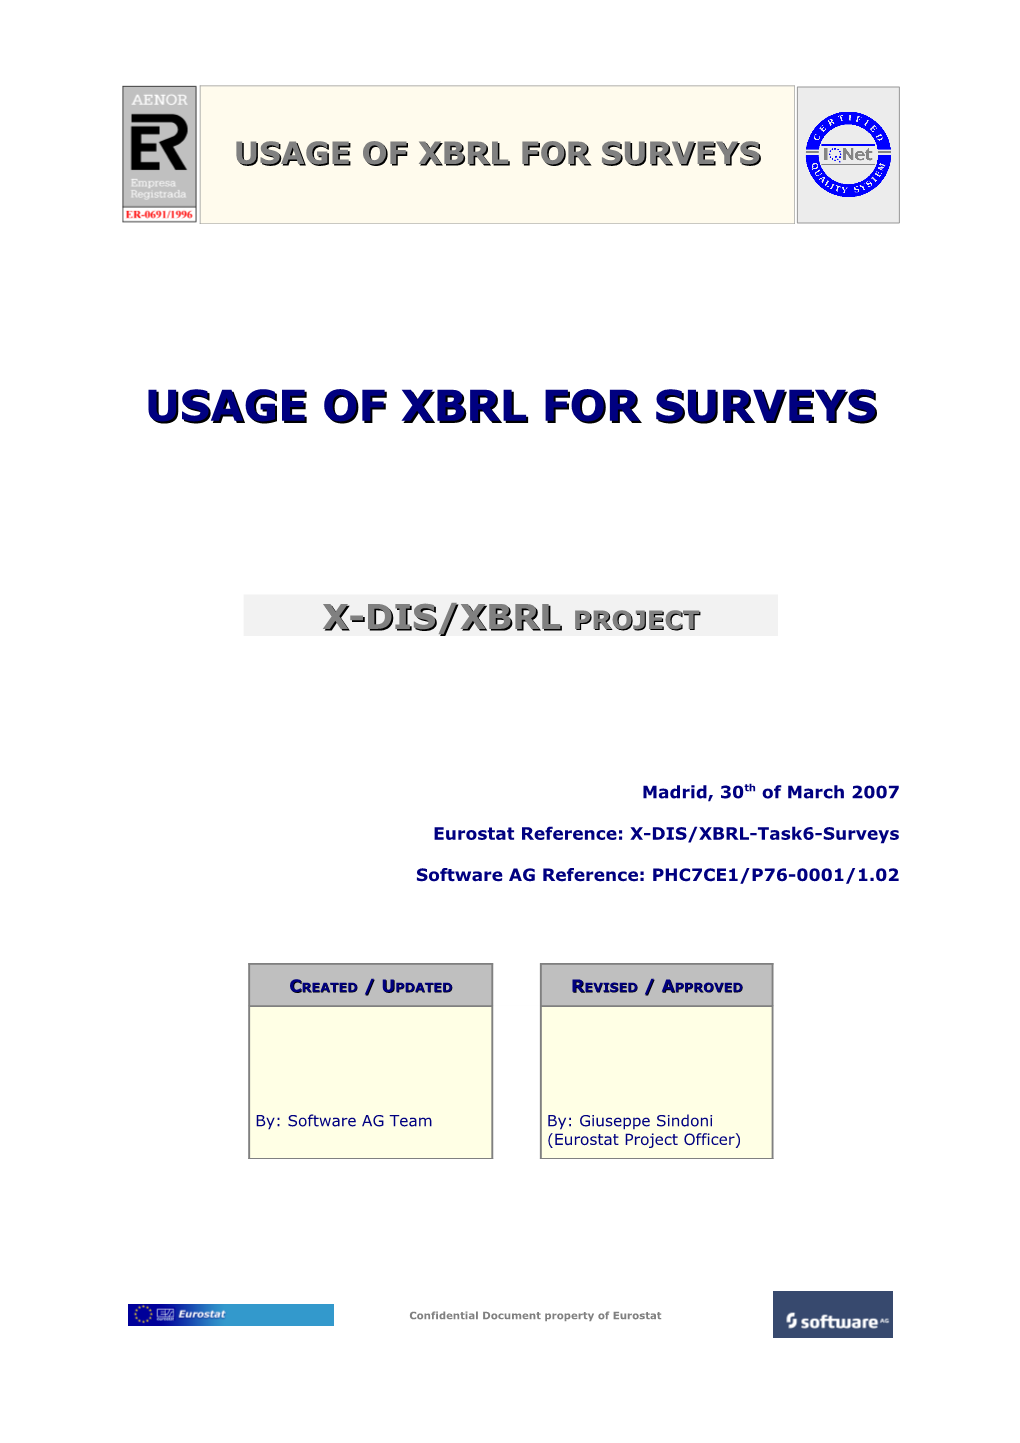 Usage of Xbrl for Surveys